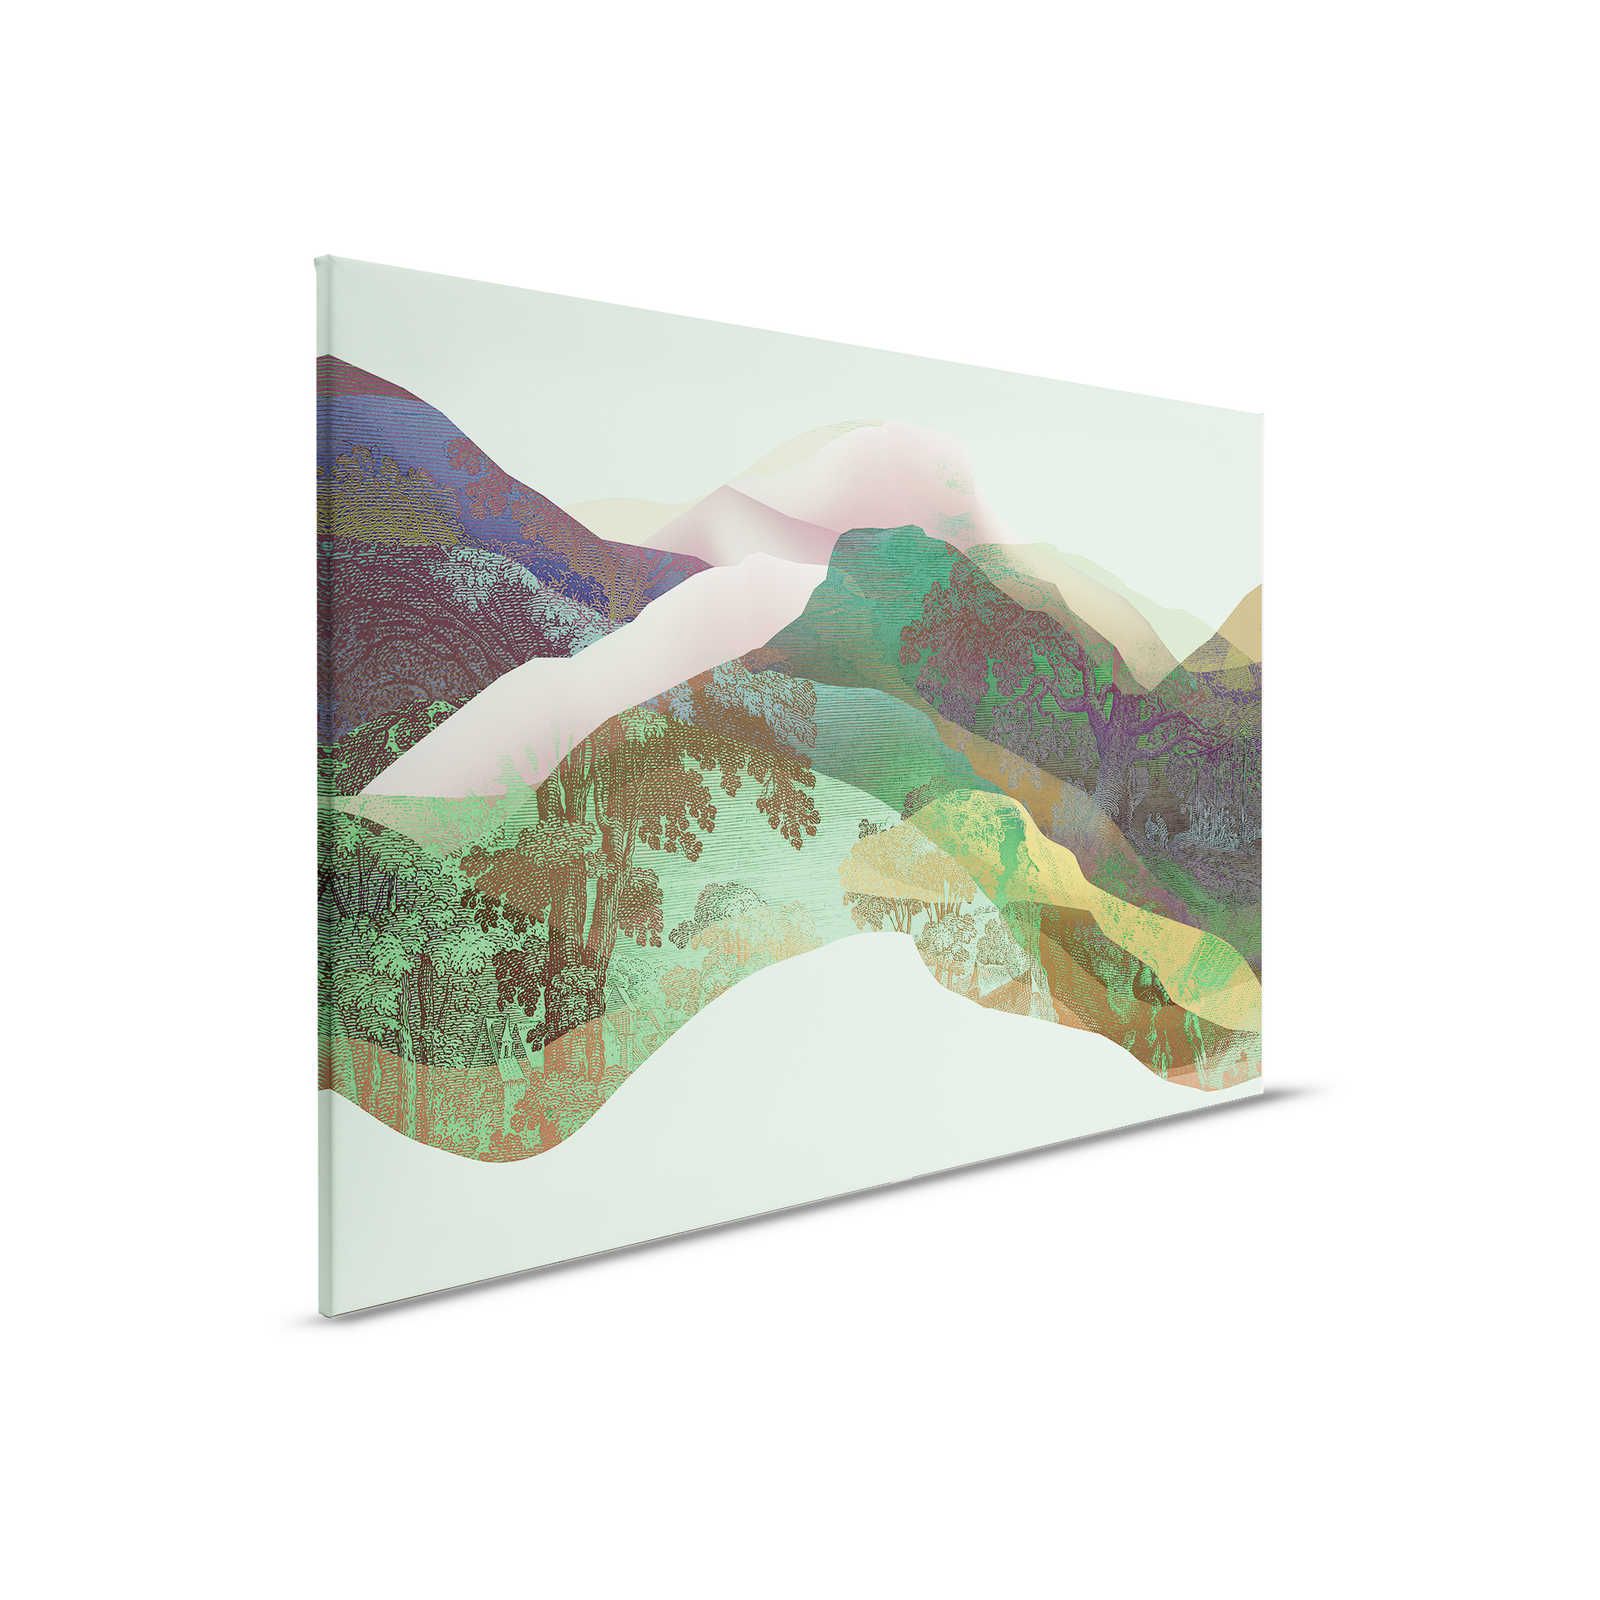 Magic Mountain 3 - Lienzo montañas verdes diseño moderno - 0,90 m x 0,60 m
